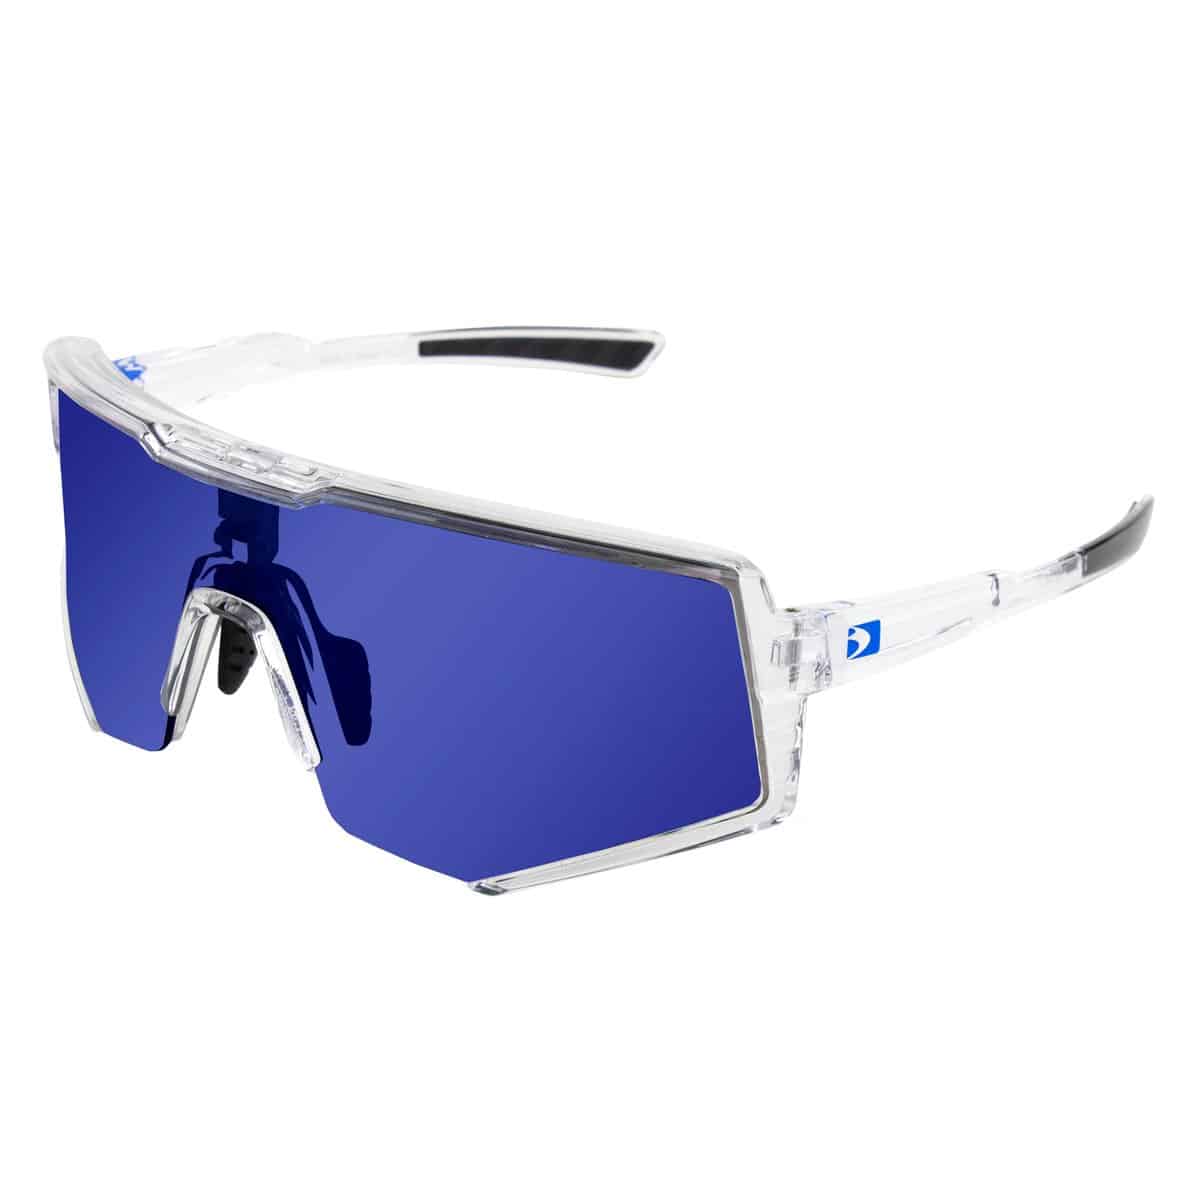 Bobster Sprocket Sunglasses - SafetyGearPro.com